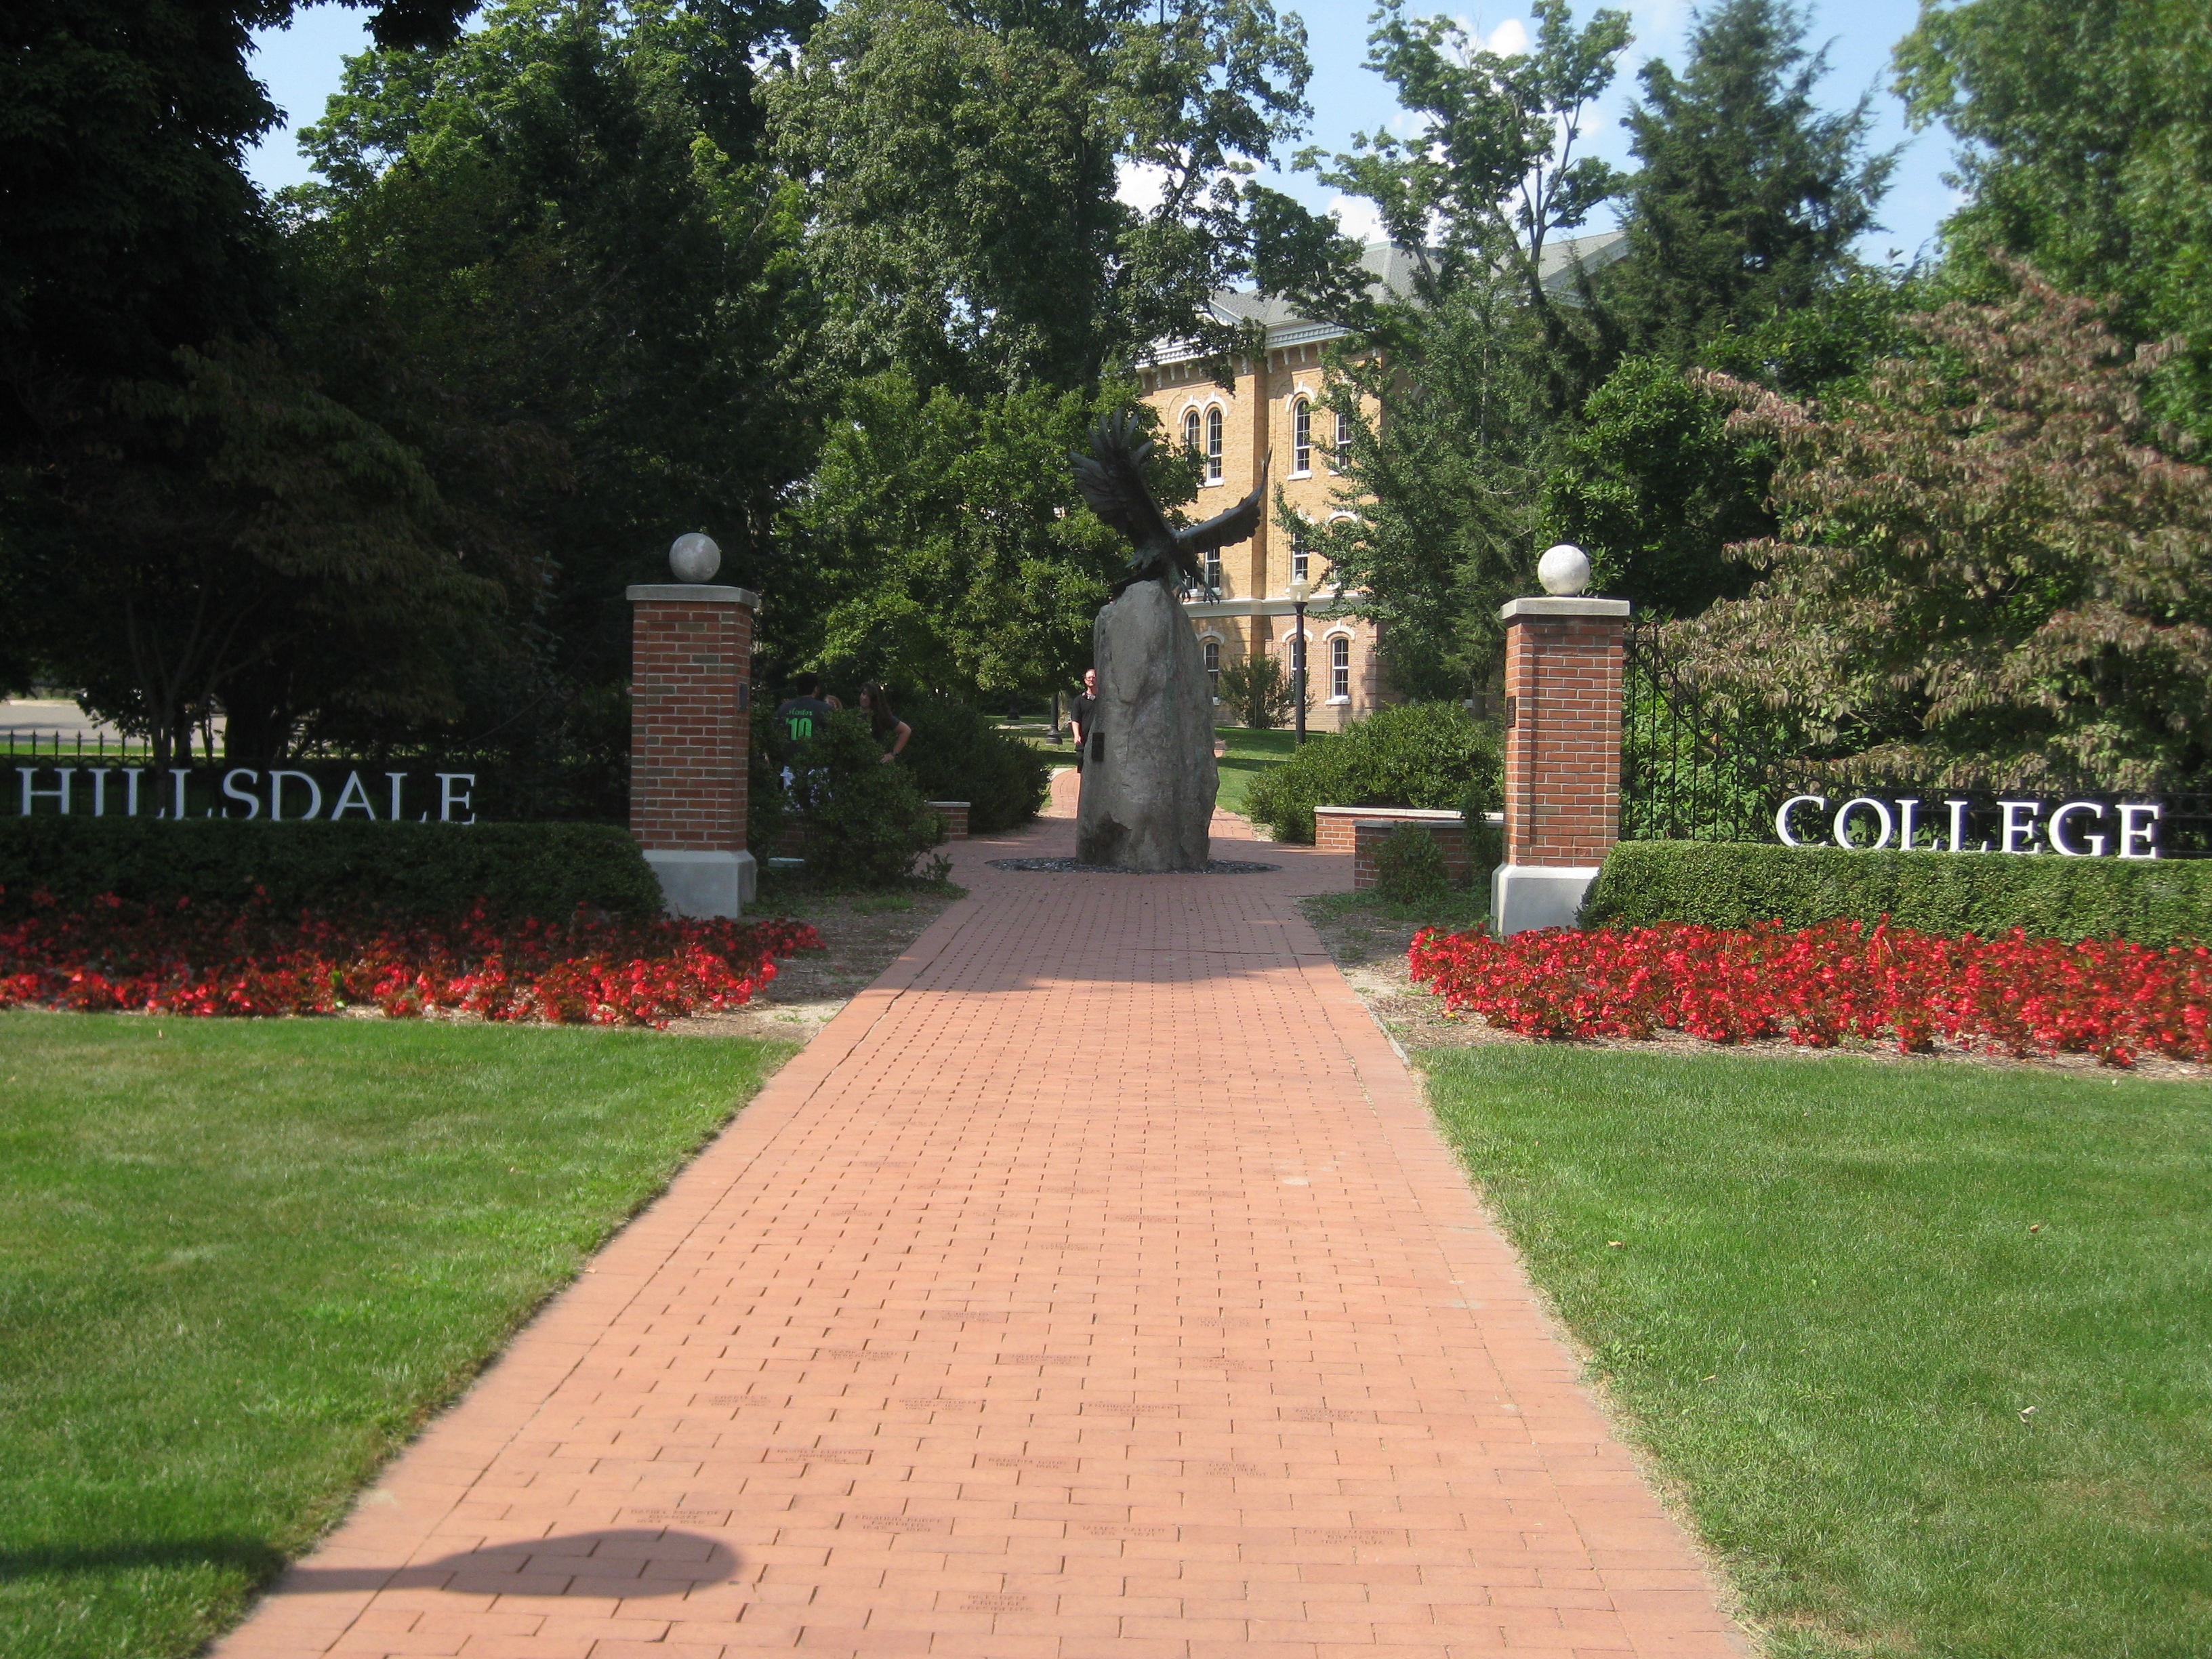 Hillsdale_College_gate